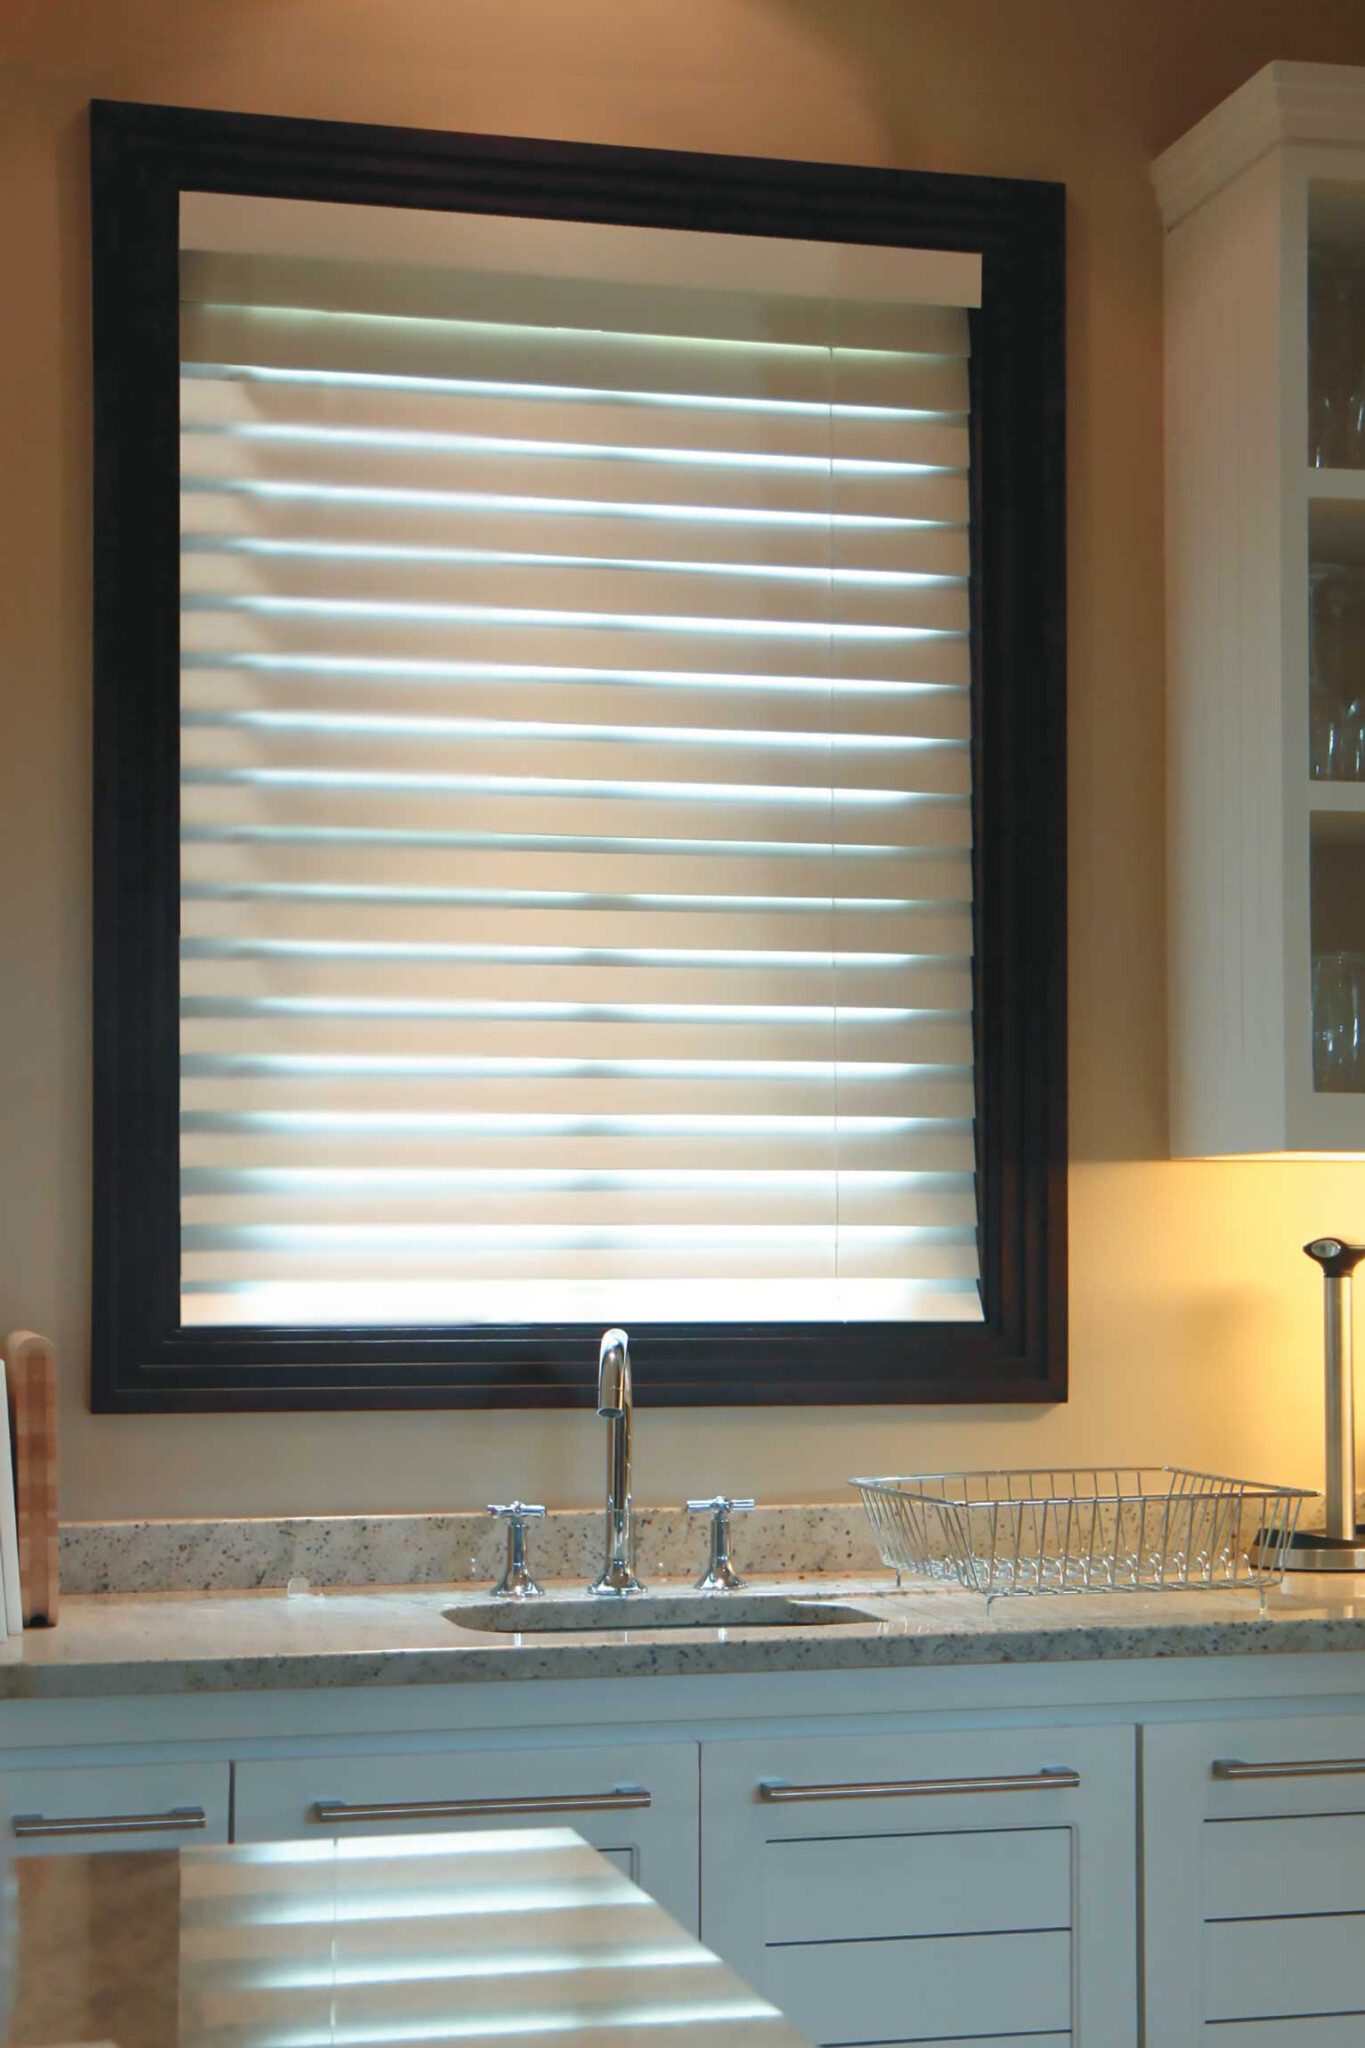 グランドウッドブラインドは耐水機能つき。キッチンやお風呂場の窓にも。